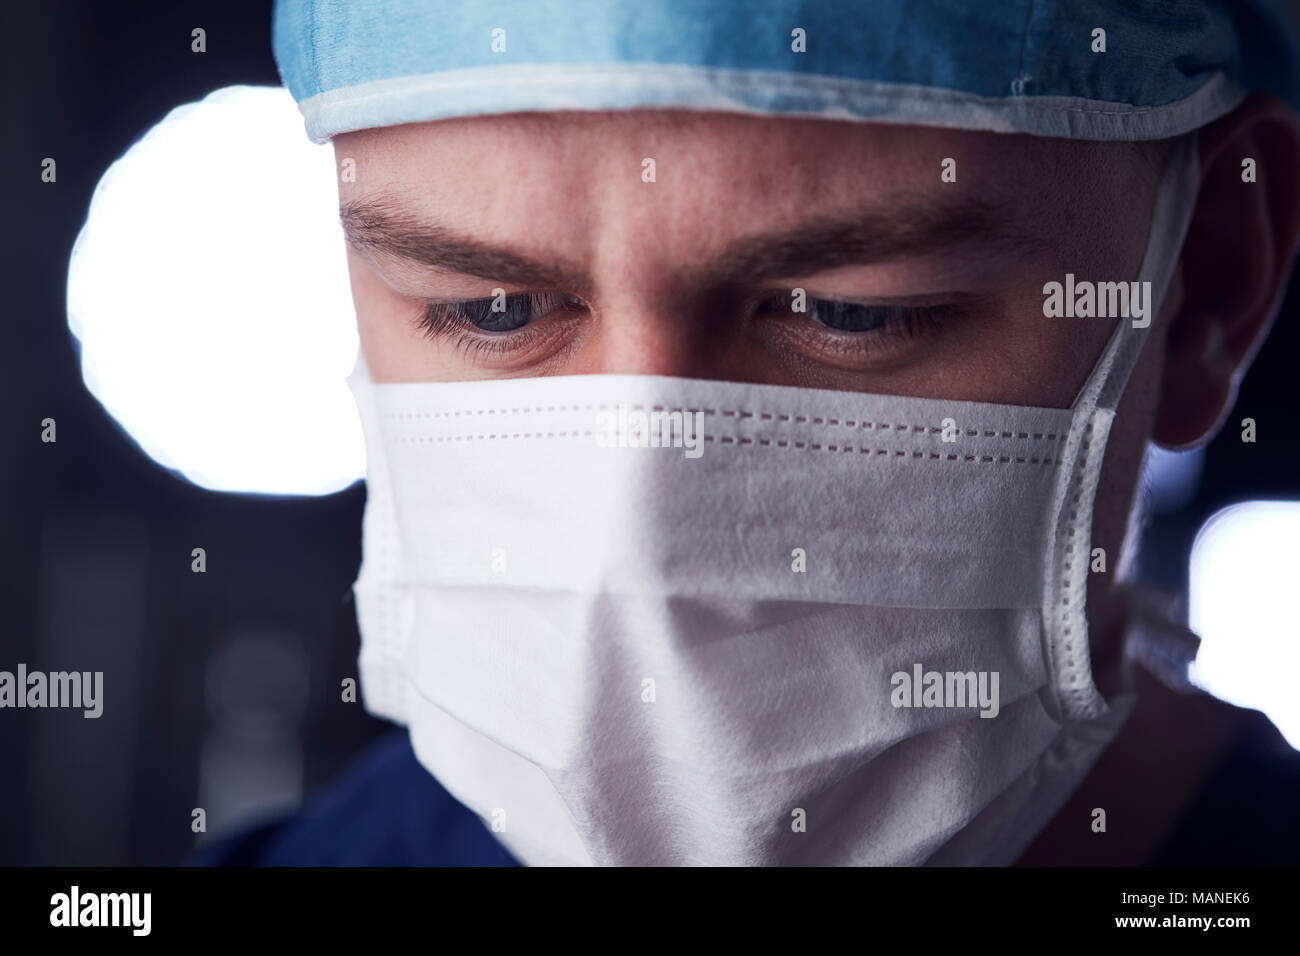 Maschio lavoratore del settore sanitario in scrubs, colpo alla testa, guardando verso il basso Foto Stock